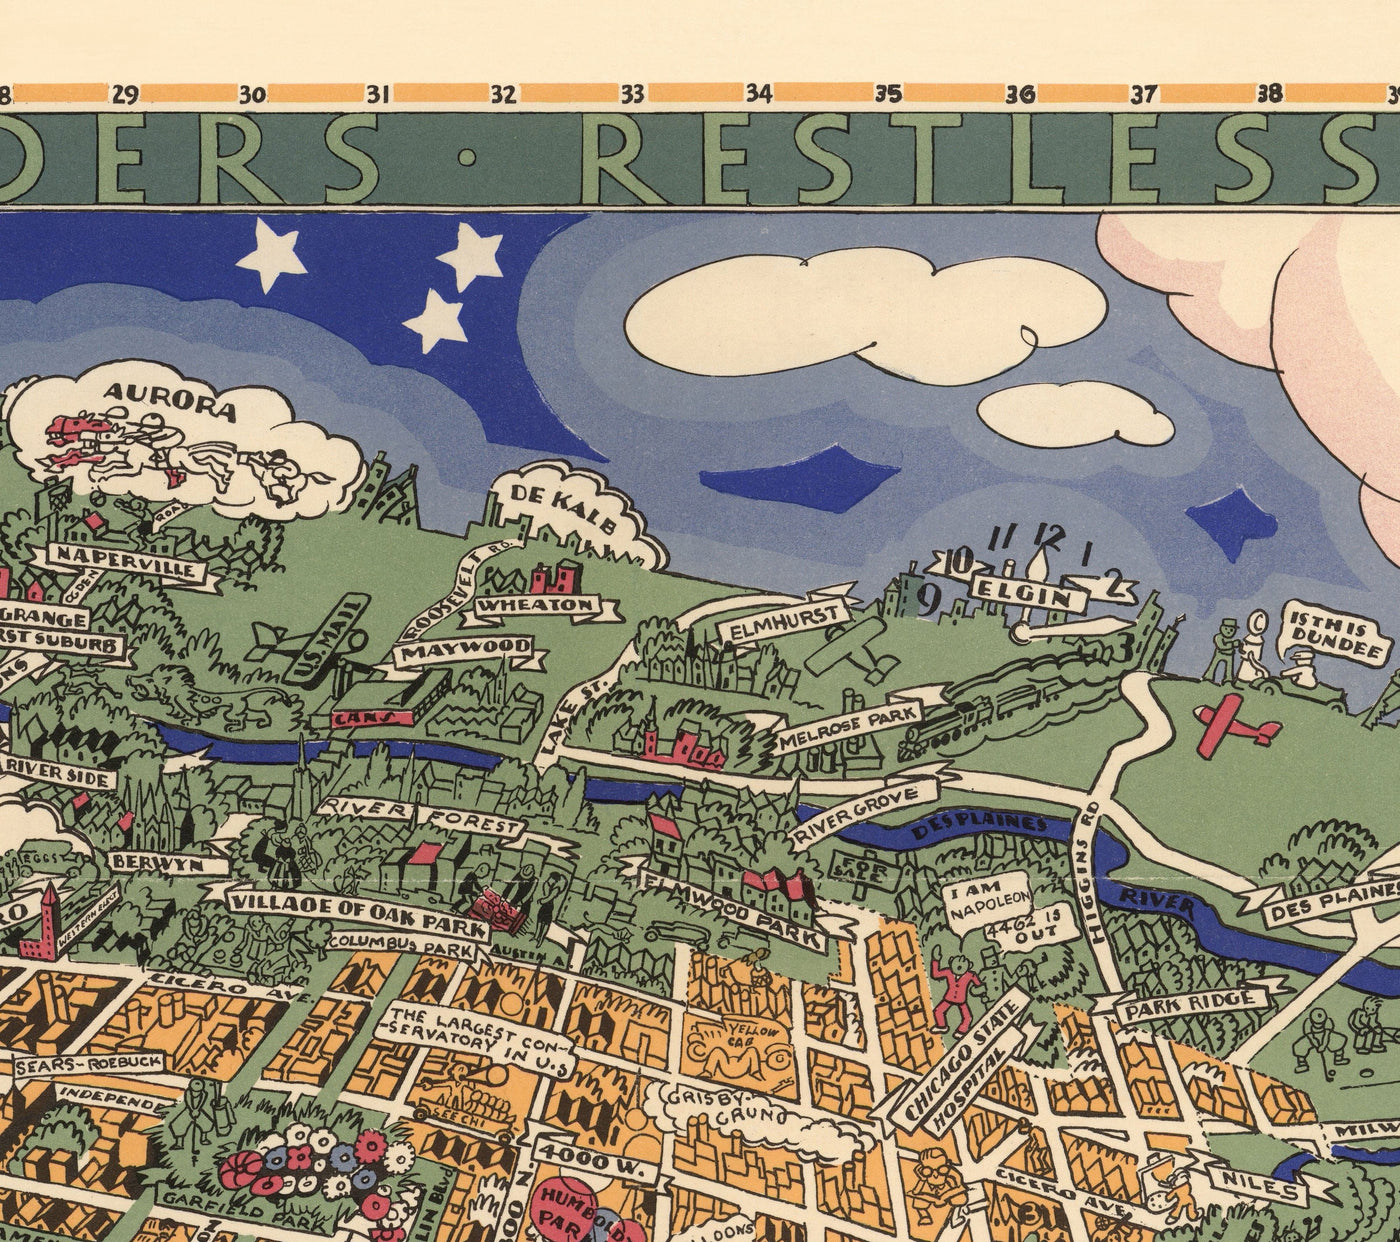 Mapa antiguo de Chicago, 1931 - Mapa de Birdseye del centro de la ciudad, Grant Park, Central, Magnificent Mile, Lago Michigan, Suburbios